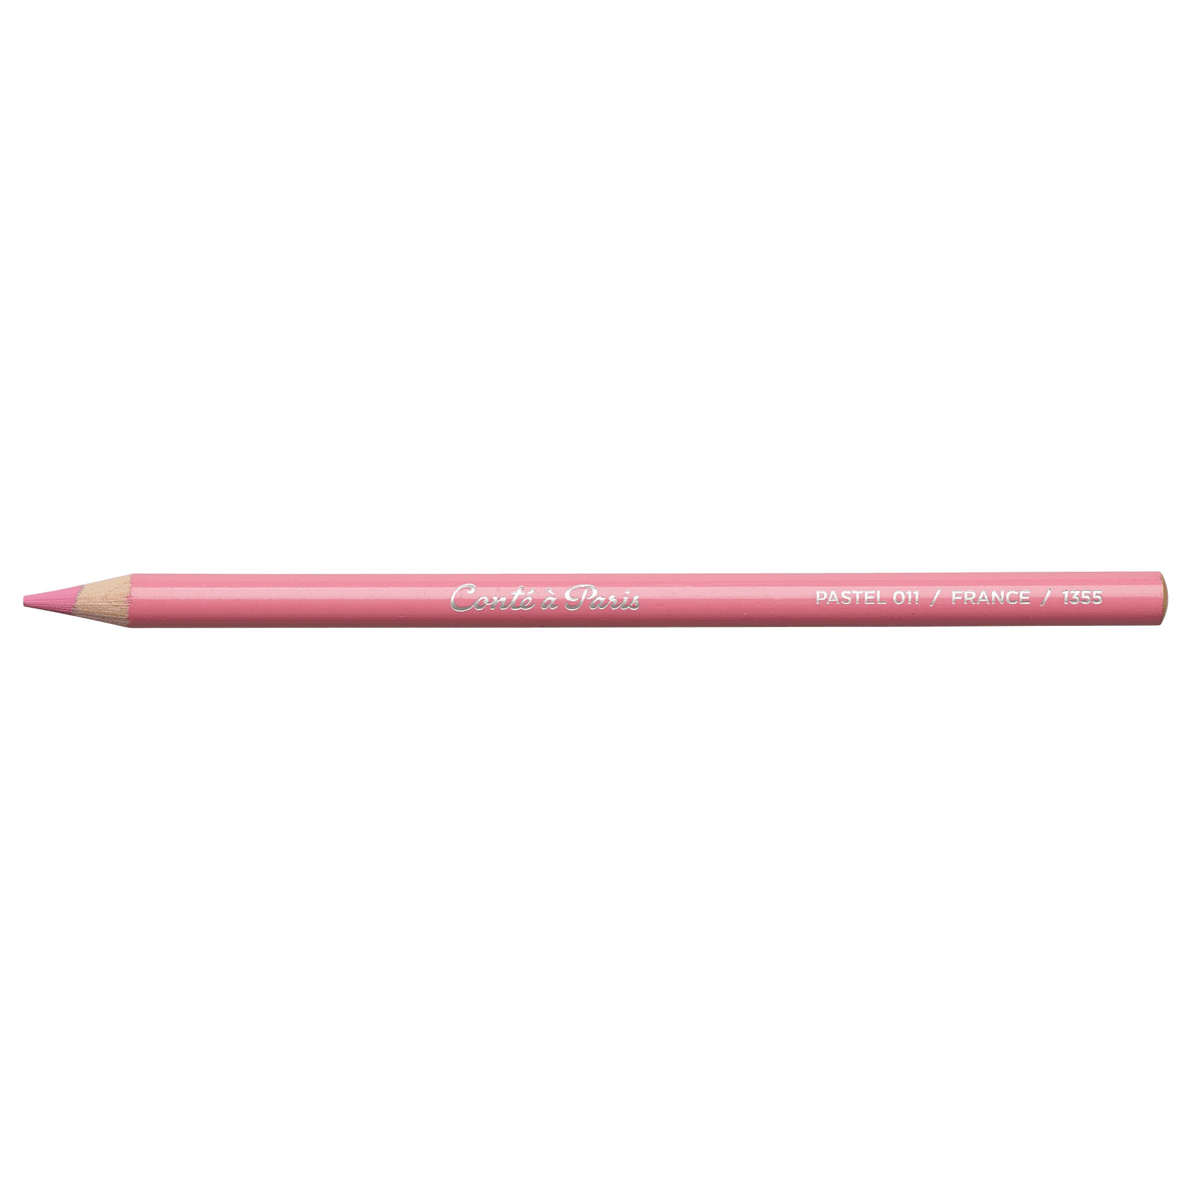 Conte Pastel Pencil - Pink - 011